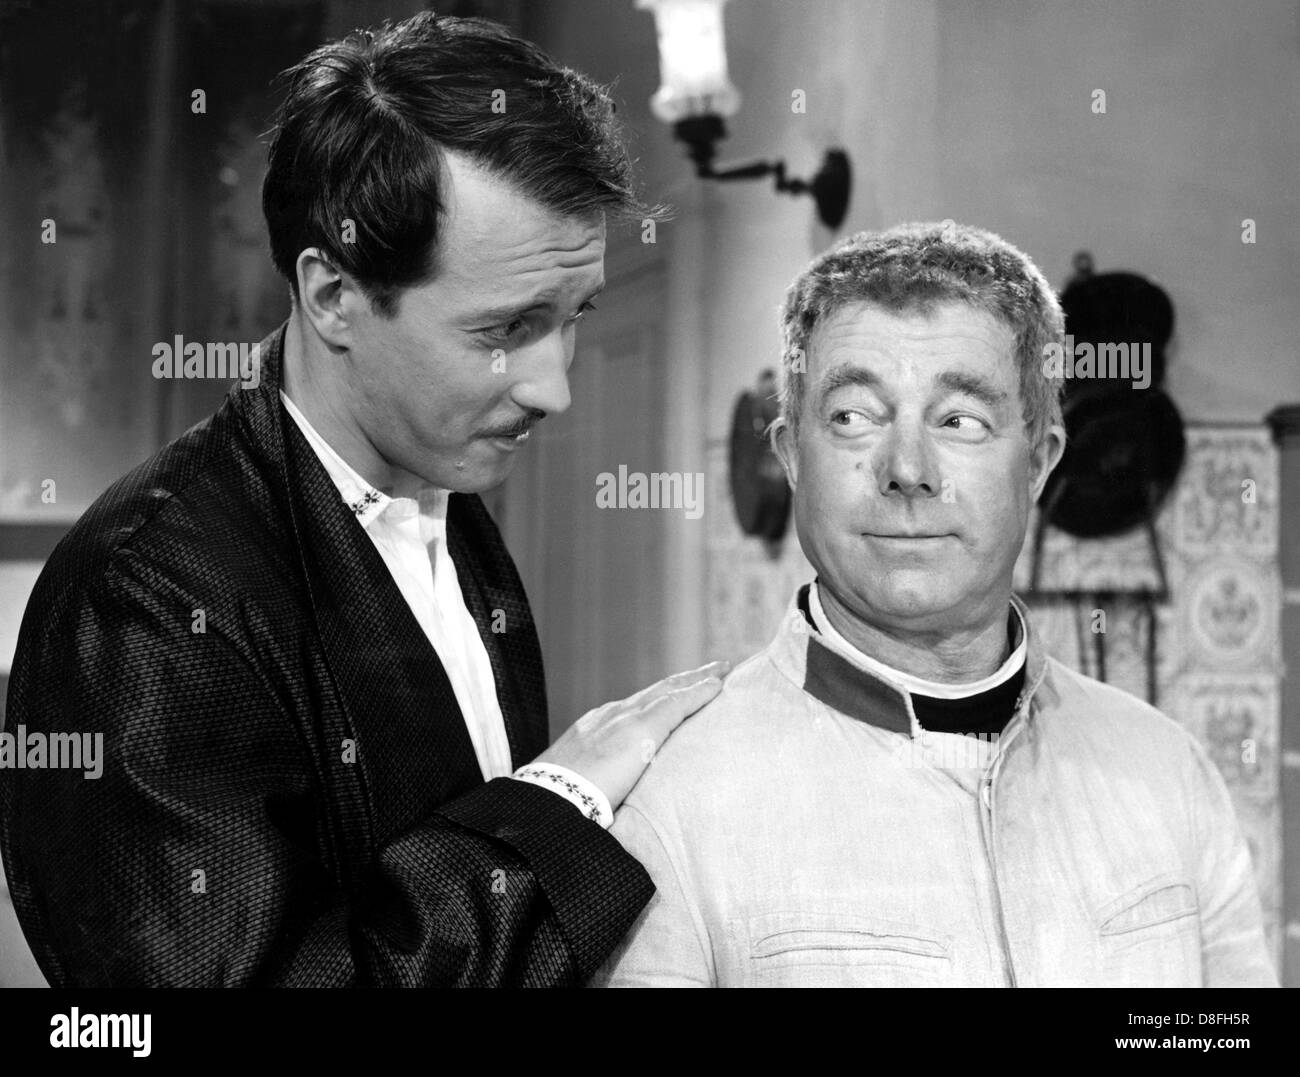 Photo de Heinz Rühmann (r) avec Horst Stankowski (l) dans une scène de "l ?bon soldat vejk'. Photographie de 1960. Banque D'Images